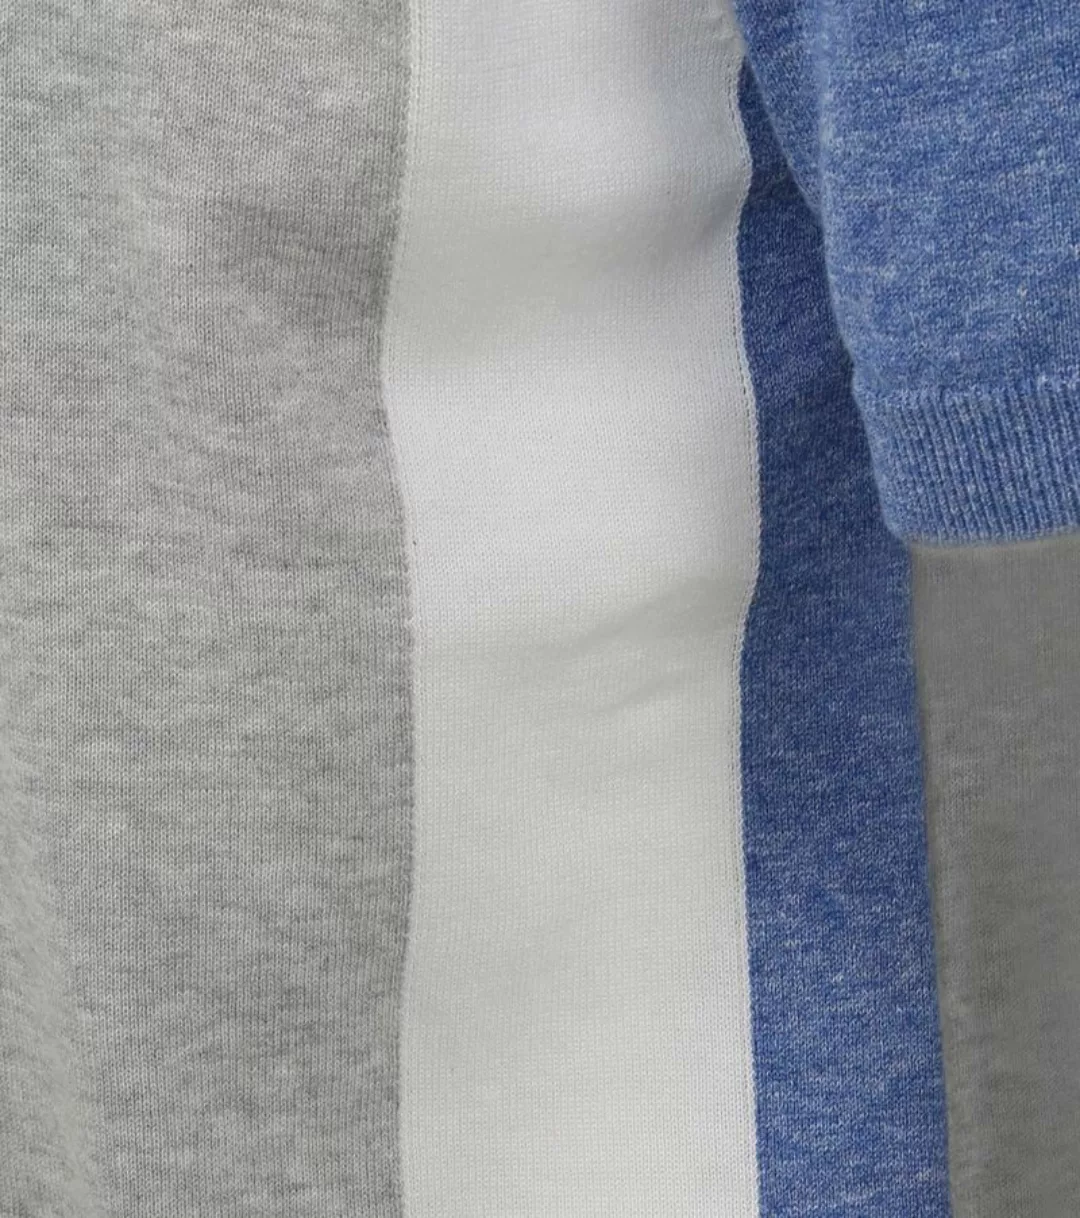 Blue Industry M18 Polo Shirt Grau - Größe XXL günstig online kaufen